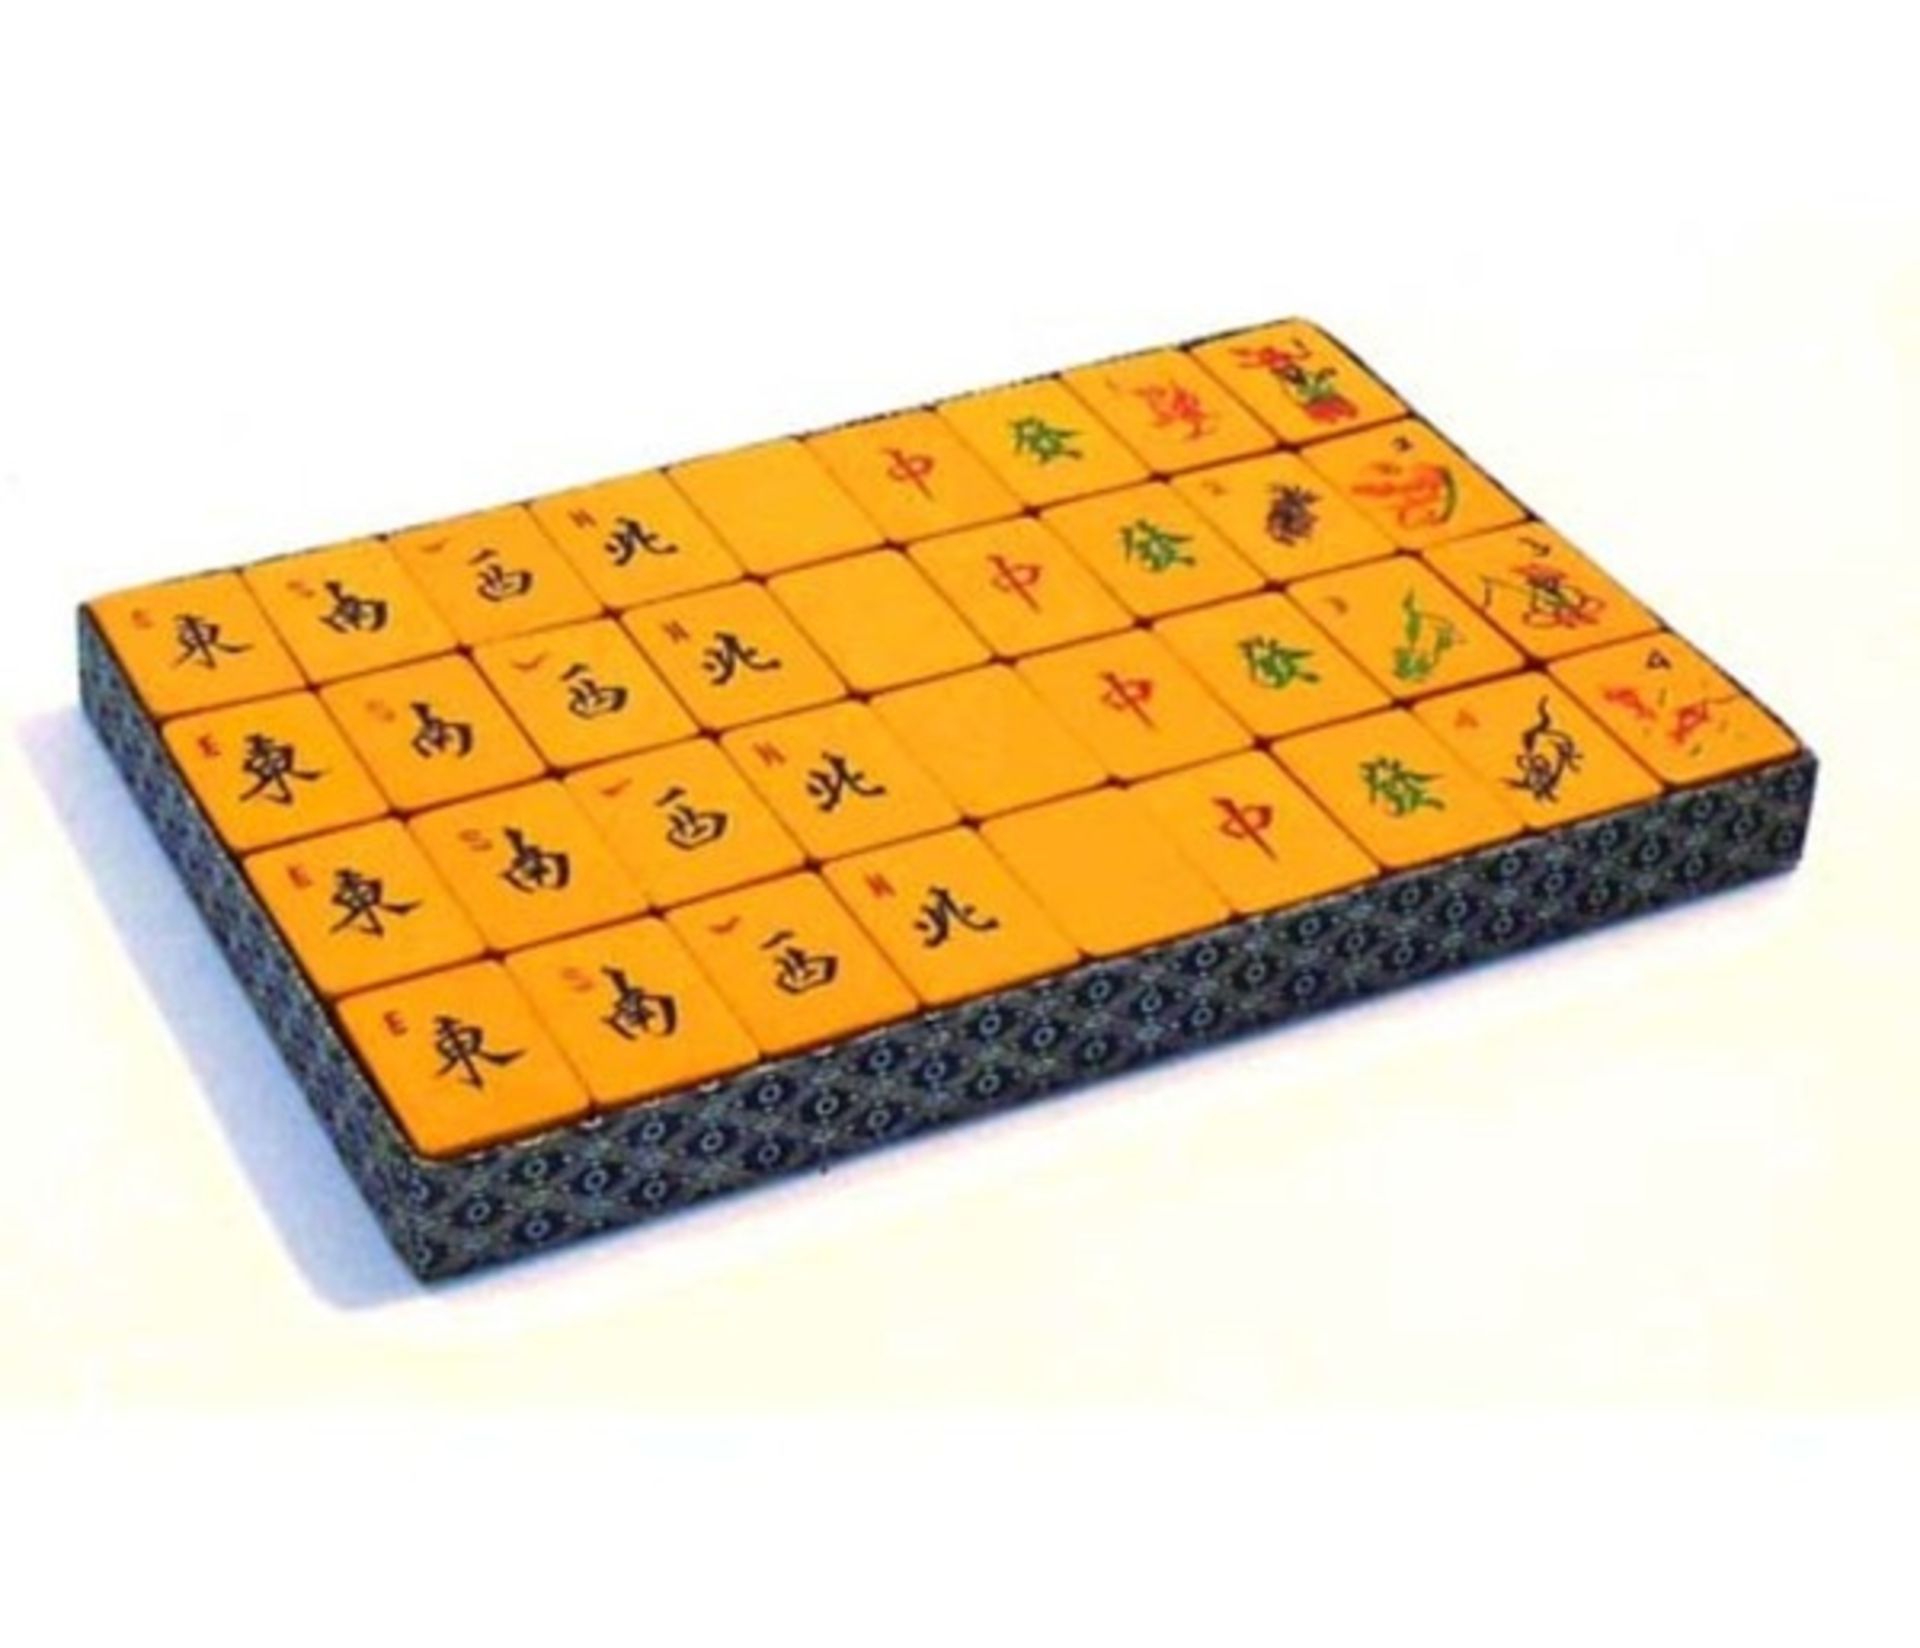 (Mahjong) Mahjong kunststof, stenen van kunststof en bamboe, ca. 1935 - Bild 6 aus 13